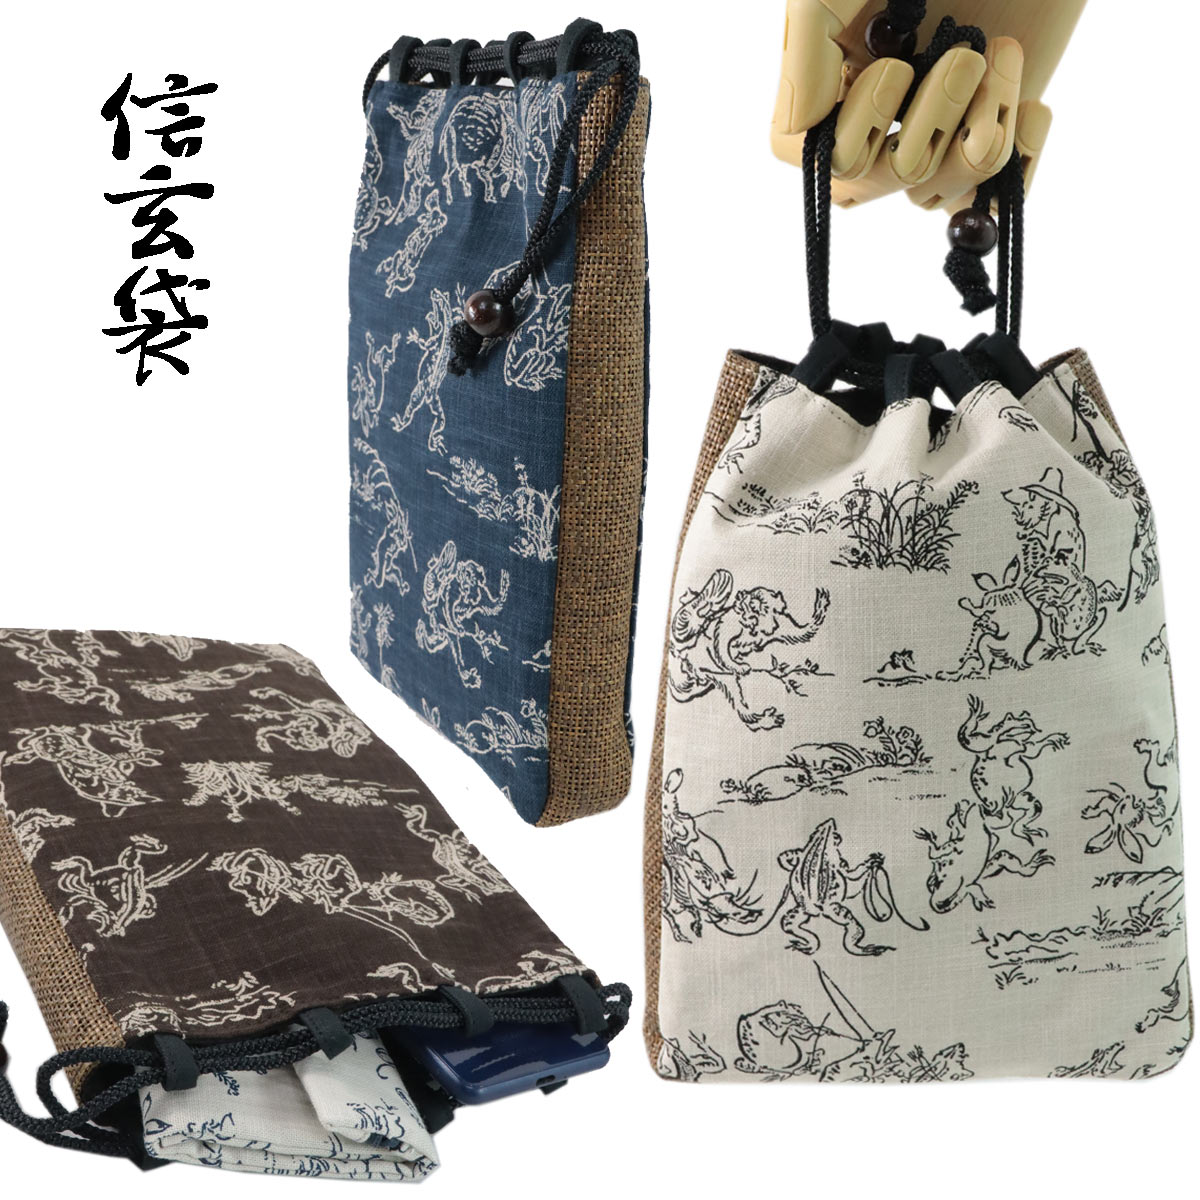 鳥獣戯画 信玄袋 -15- 網代マチ巾着 綿100% 網代編み 京都 万里小路